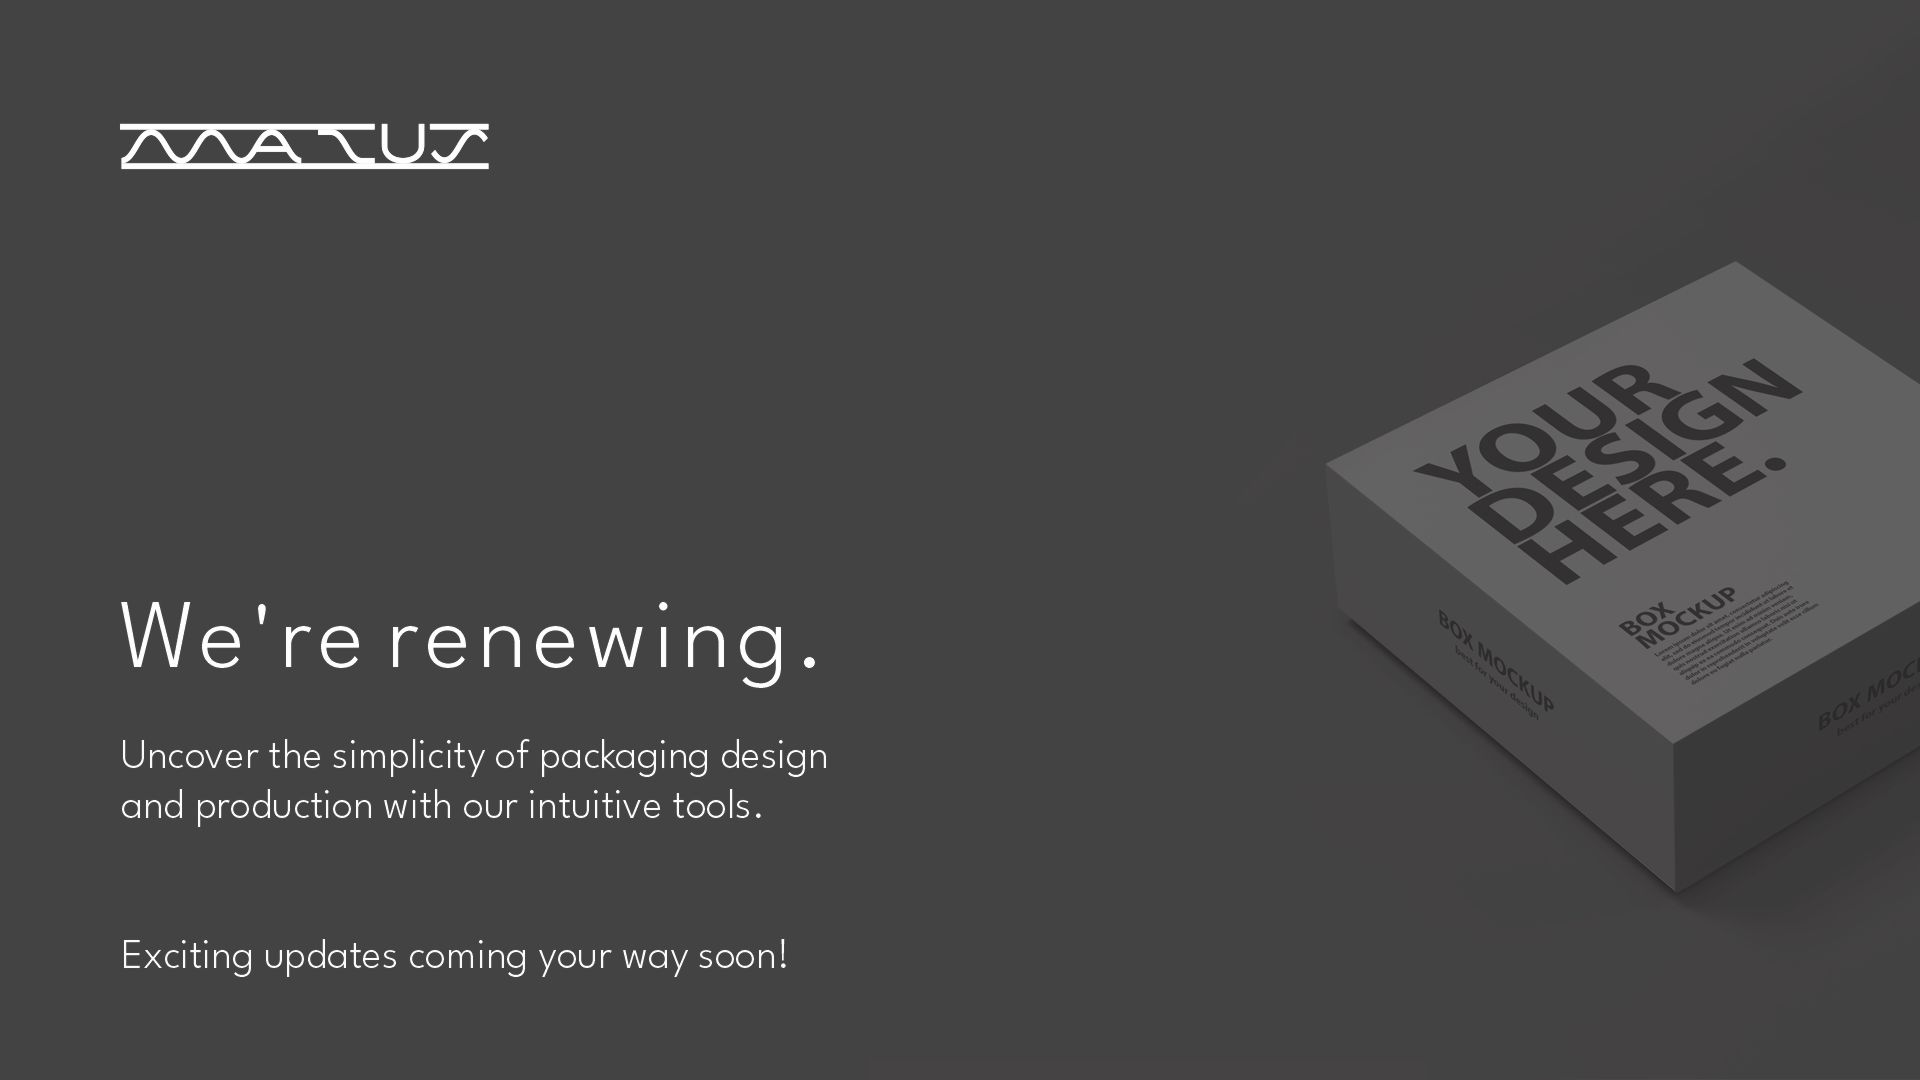 MAZUS is renewing...